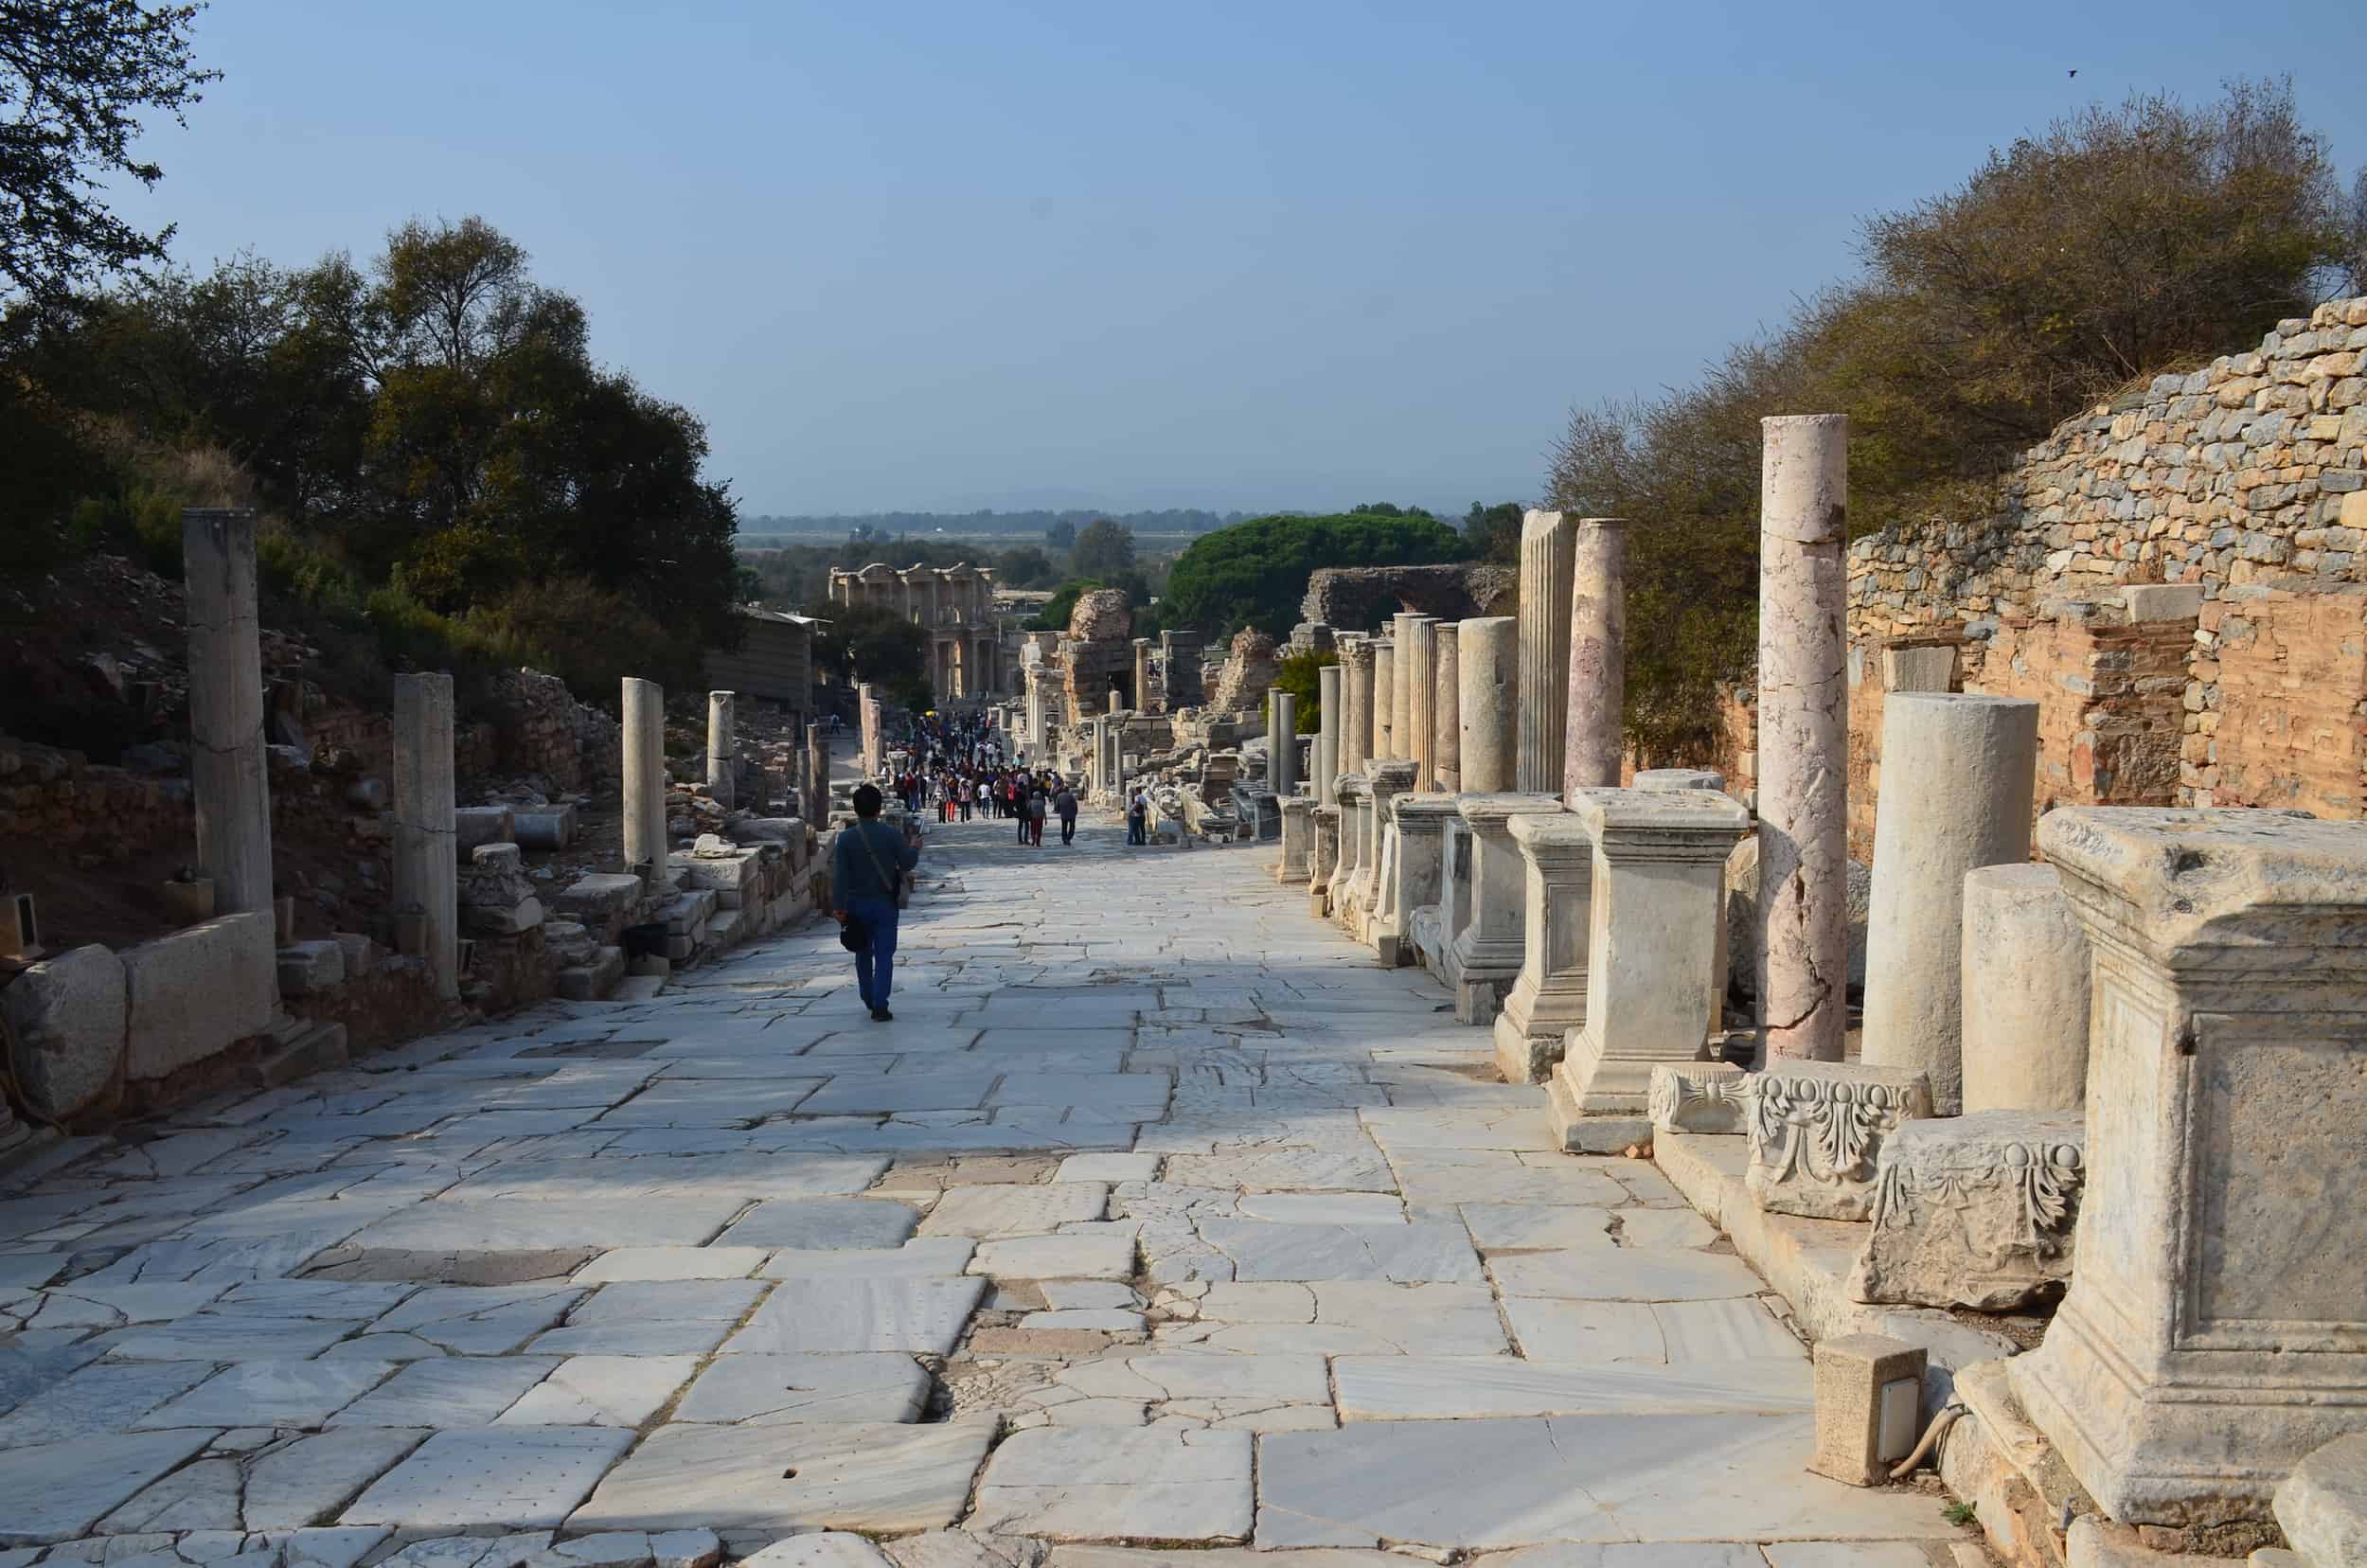 Looking down Curetes Street after the Hercules Gate in Ephesus